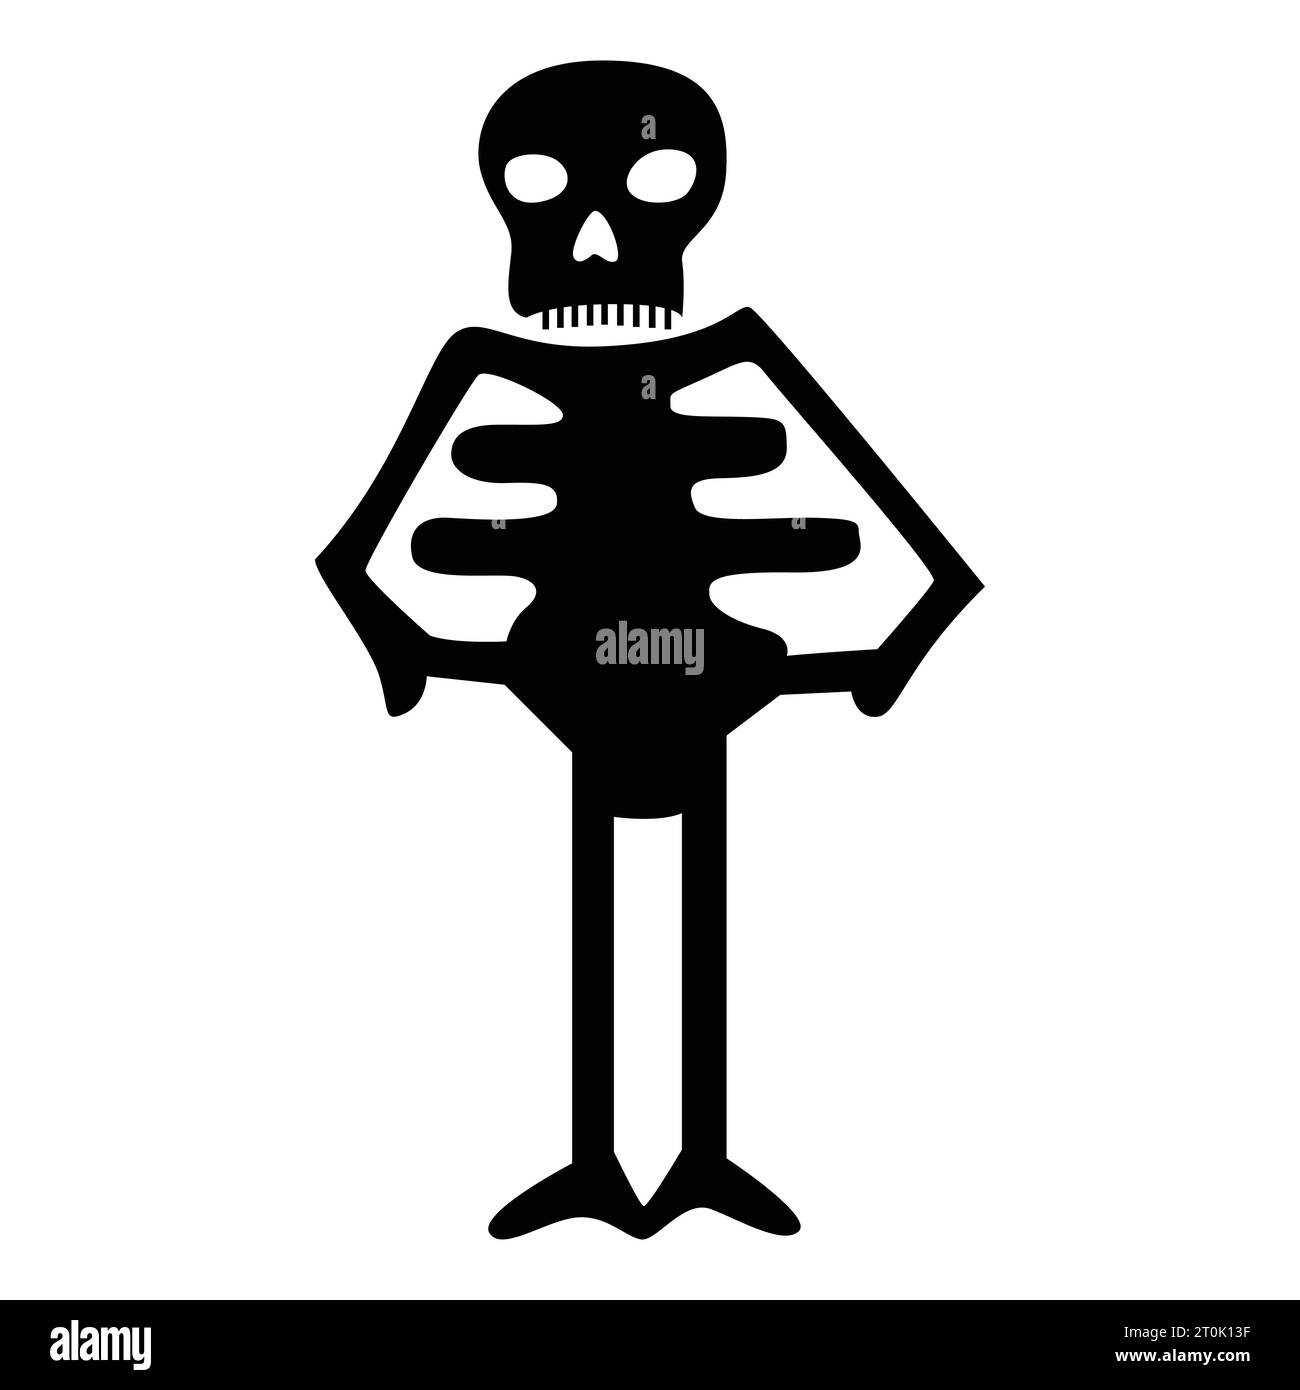 Lernen Sie unsere urkomische Halloween Skelett-Ikone kennen. Füge deinen gruseligen Festlichkeiten eine Prickelgabe Humor hinzu. Stock Vektor